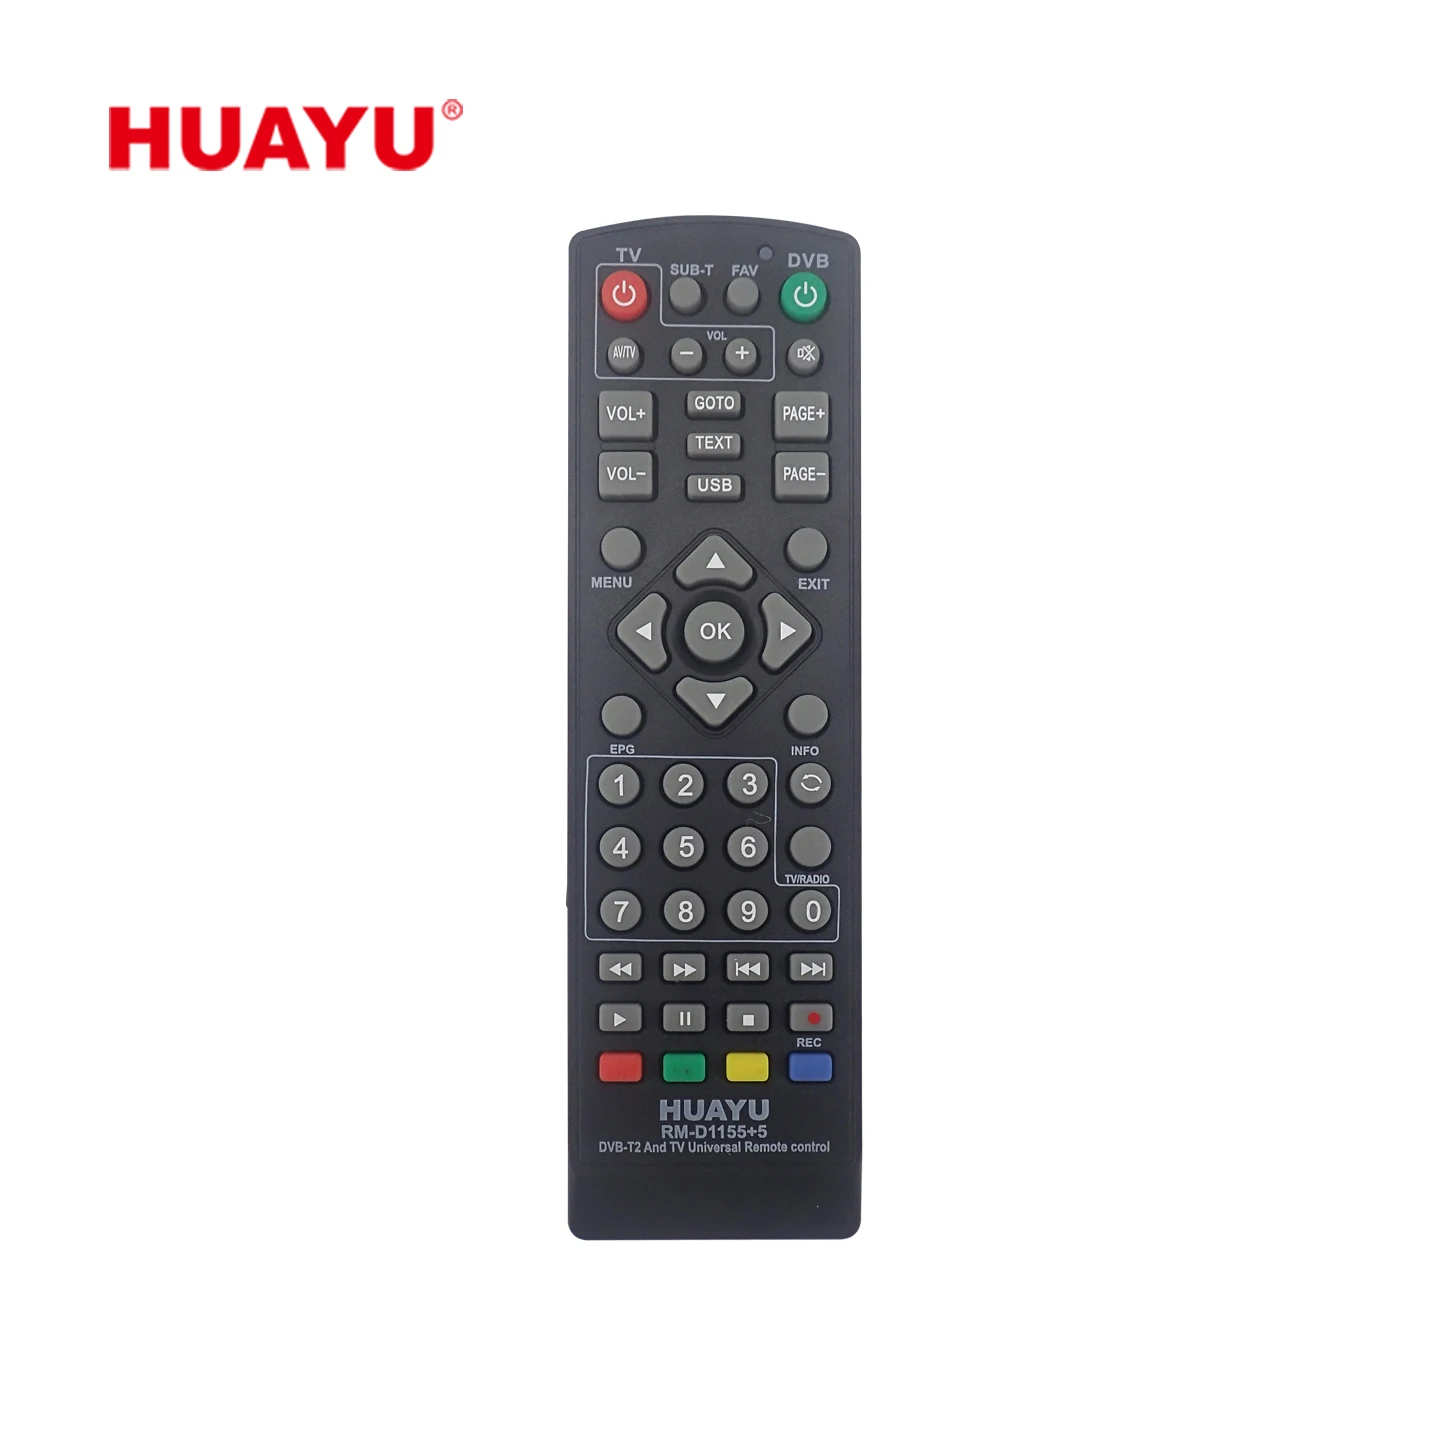 Пульт huayu dvb t2 tv. Пульт Huayu для cadena HT-1110. Пульт для приставки open Box t999. Huayu RM-d1155+5. Пульт для кадена 1110.